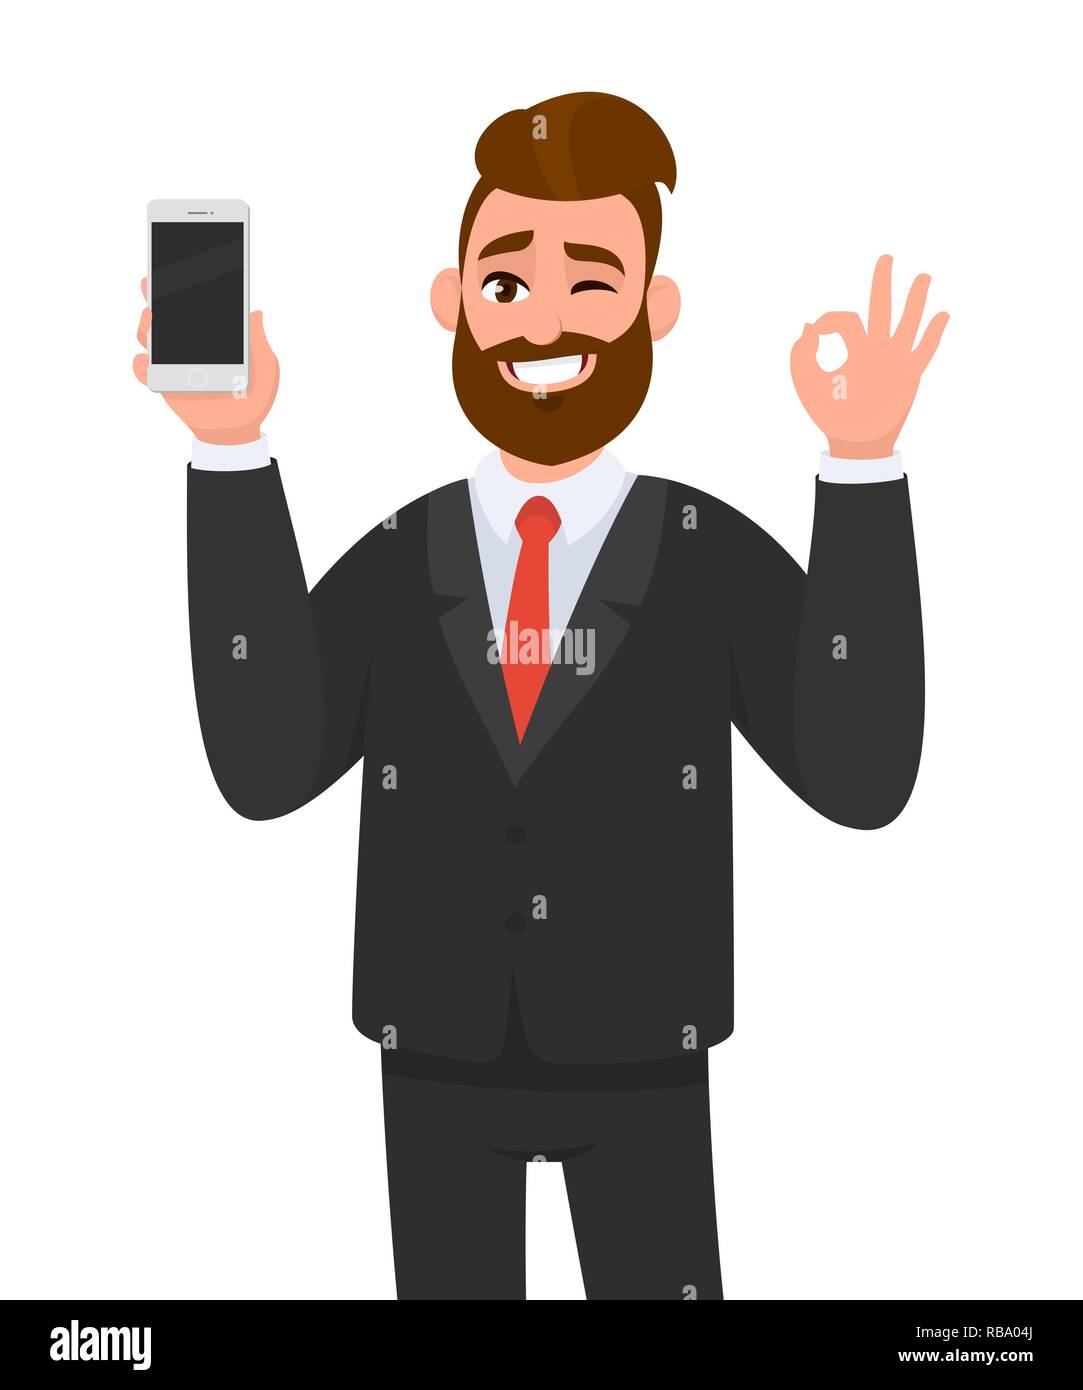 Bon homme d'affaires réussi montrant smartphone, mobile, téléphone cellulaire en main et gestuelle OK ou signe OK tout en se faisant un clin d'œil. Bon, bonne affaire, d'accord, d'approbation Illustration de Vecteur